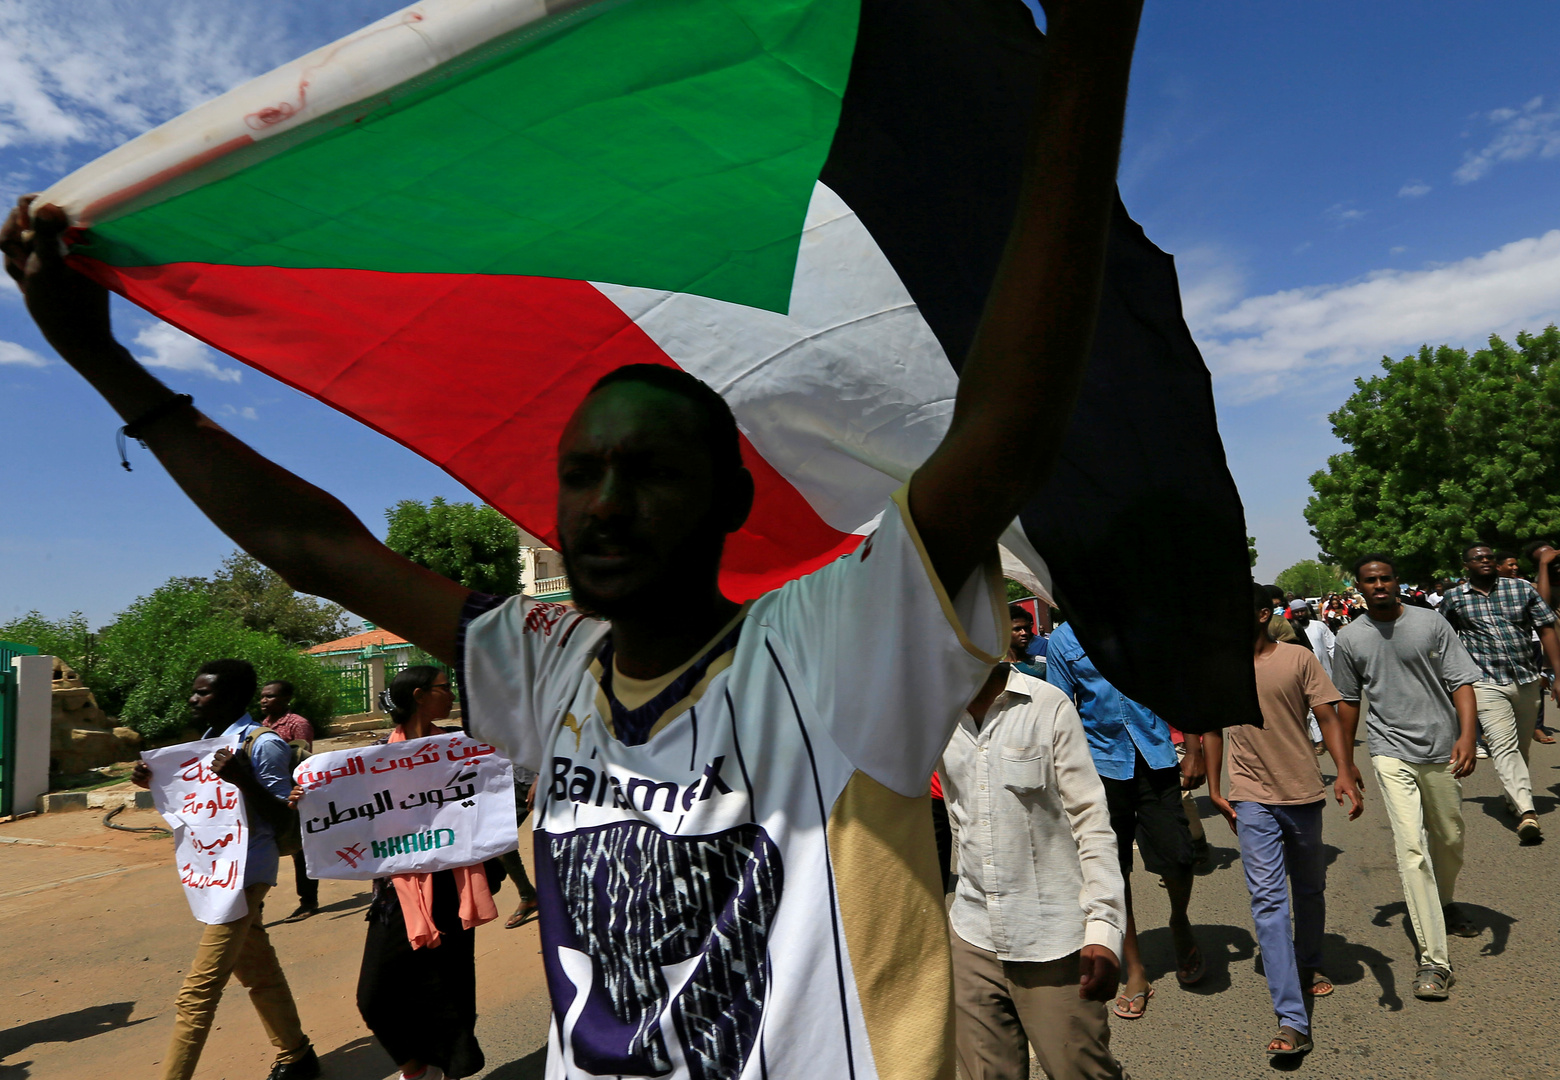 بيان شديد اللهجة للخرطوم: إساءة إثيوبيا للسودان واتهامه بالعمالة لأطراف أخرى إهانة بليغة لا تغتفر